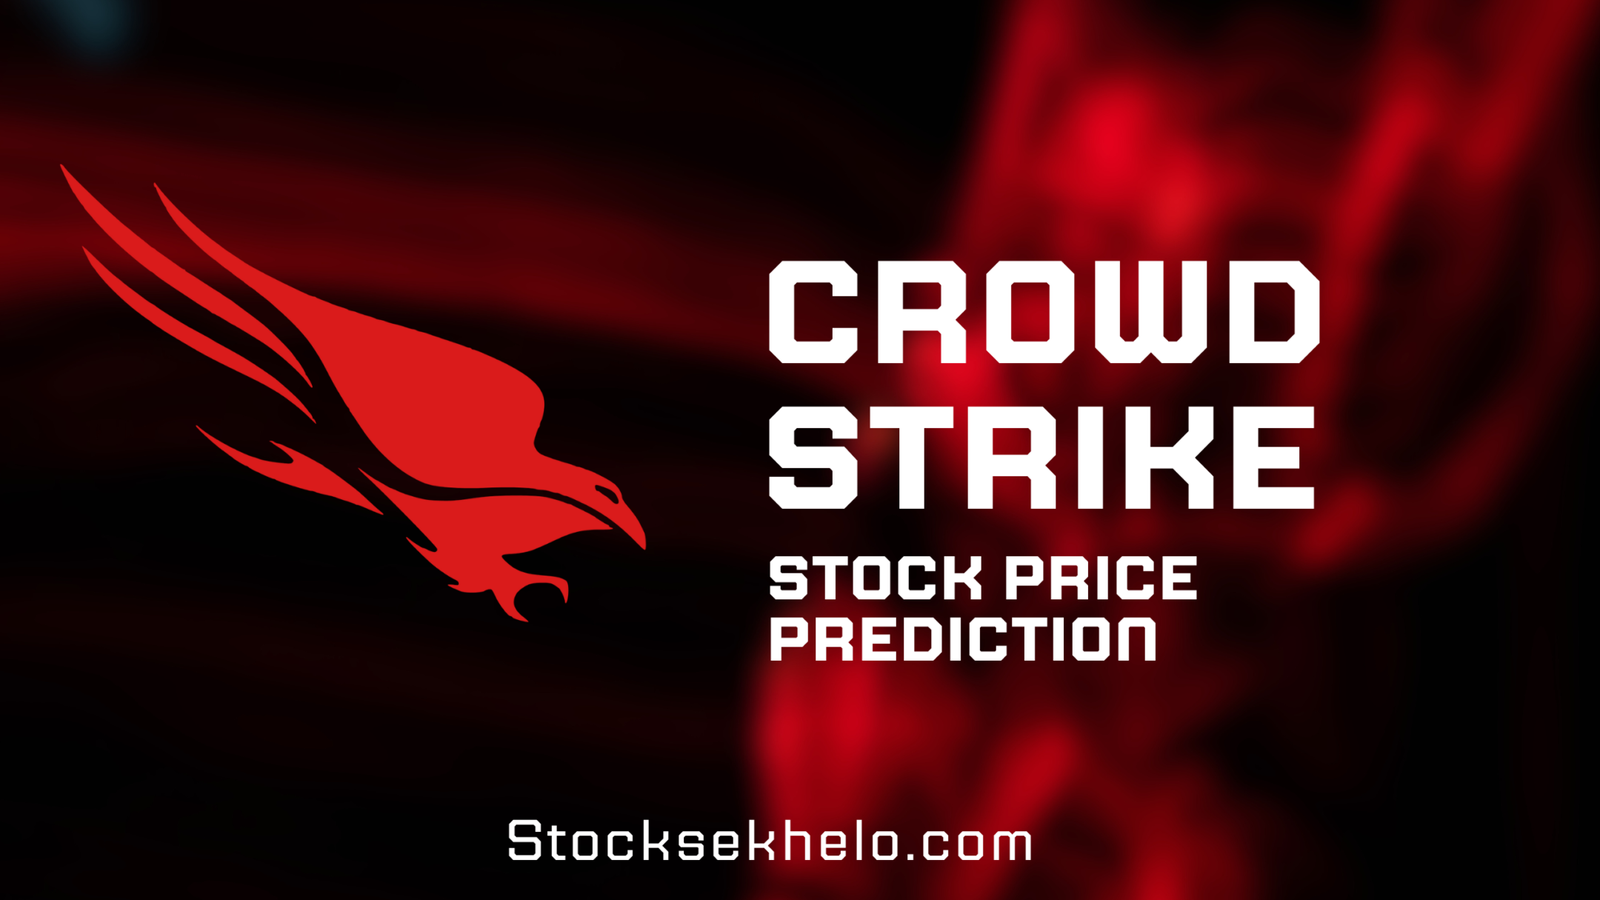 Crowdstrike Stock Price Prediction